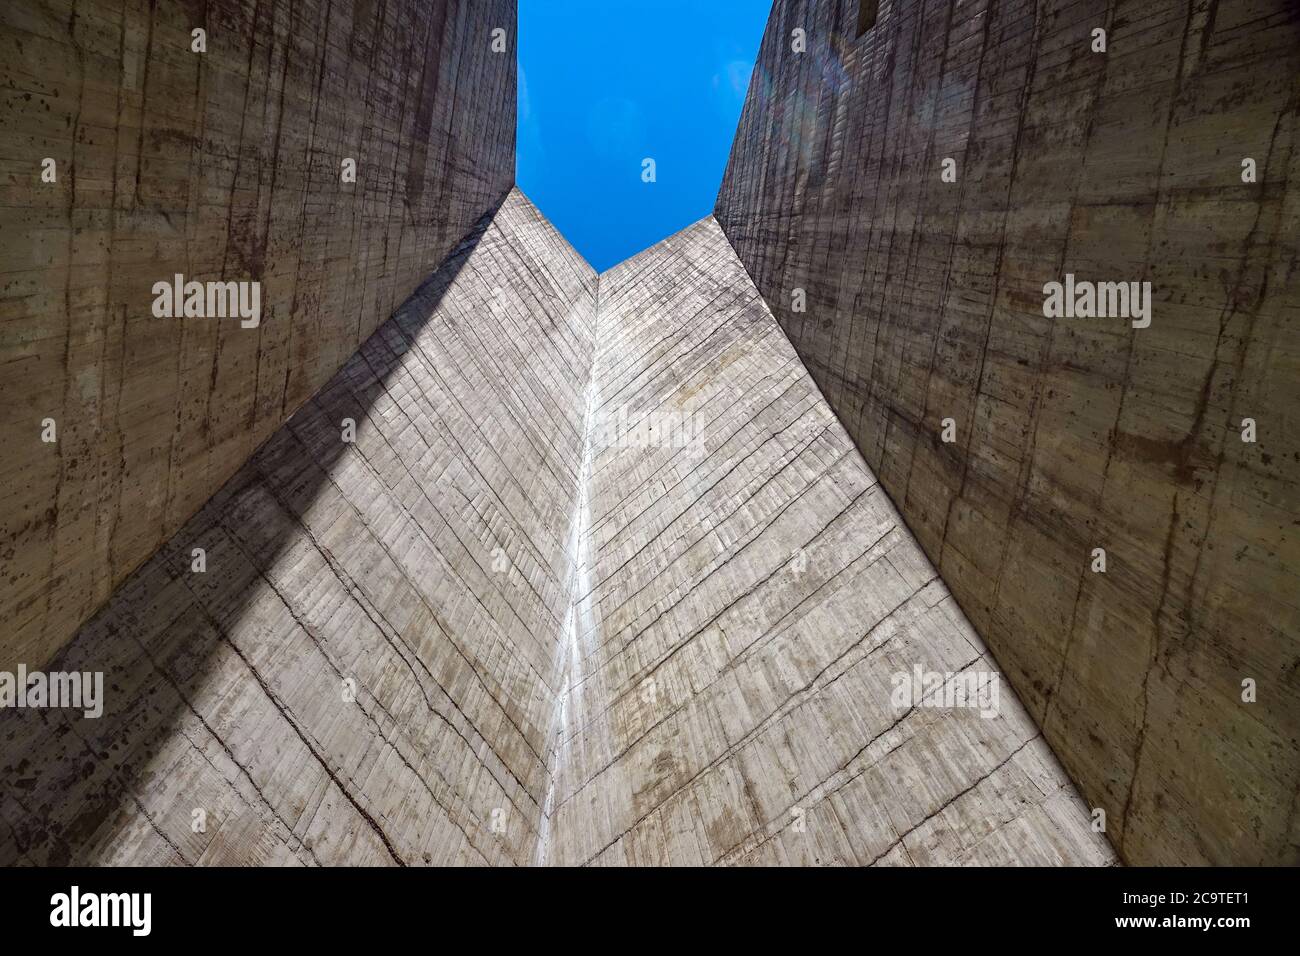 The huge concrete dam at Plan d'Amont, above Aussois, Vanoise National Park, France Stock Photo